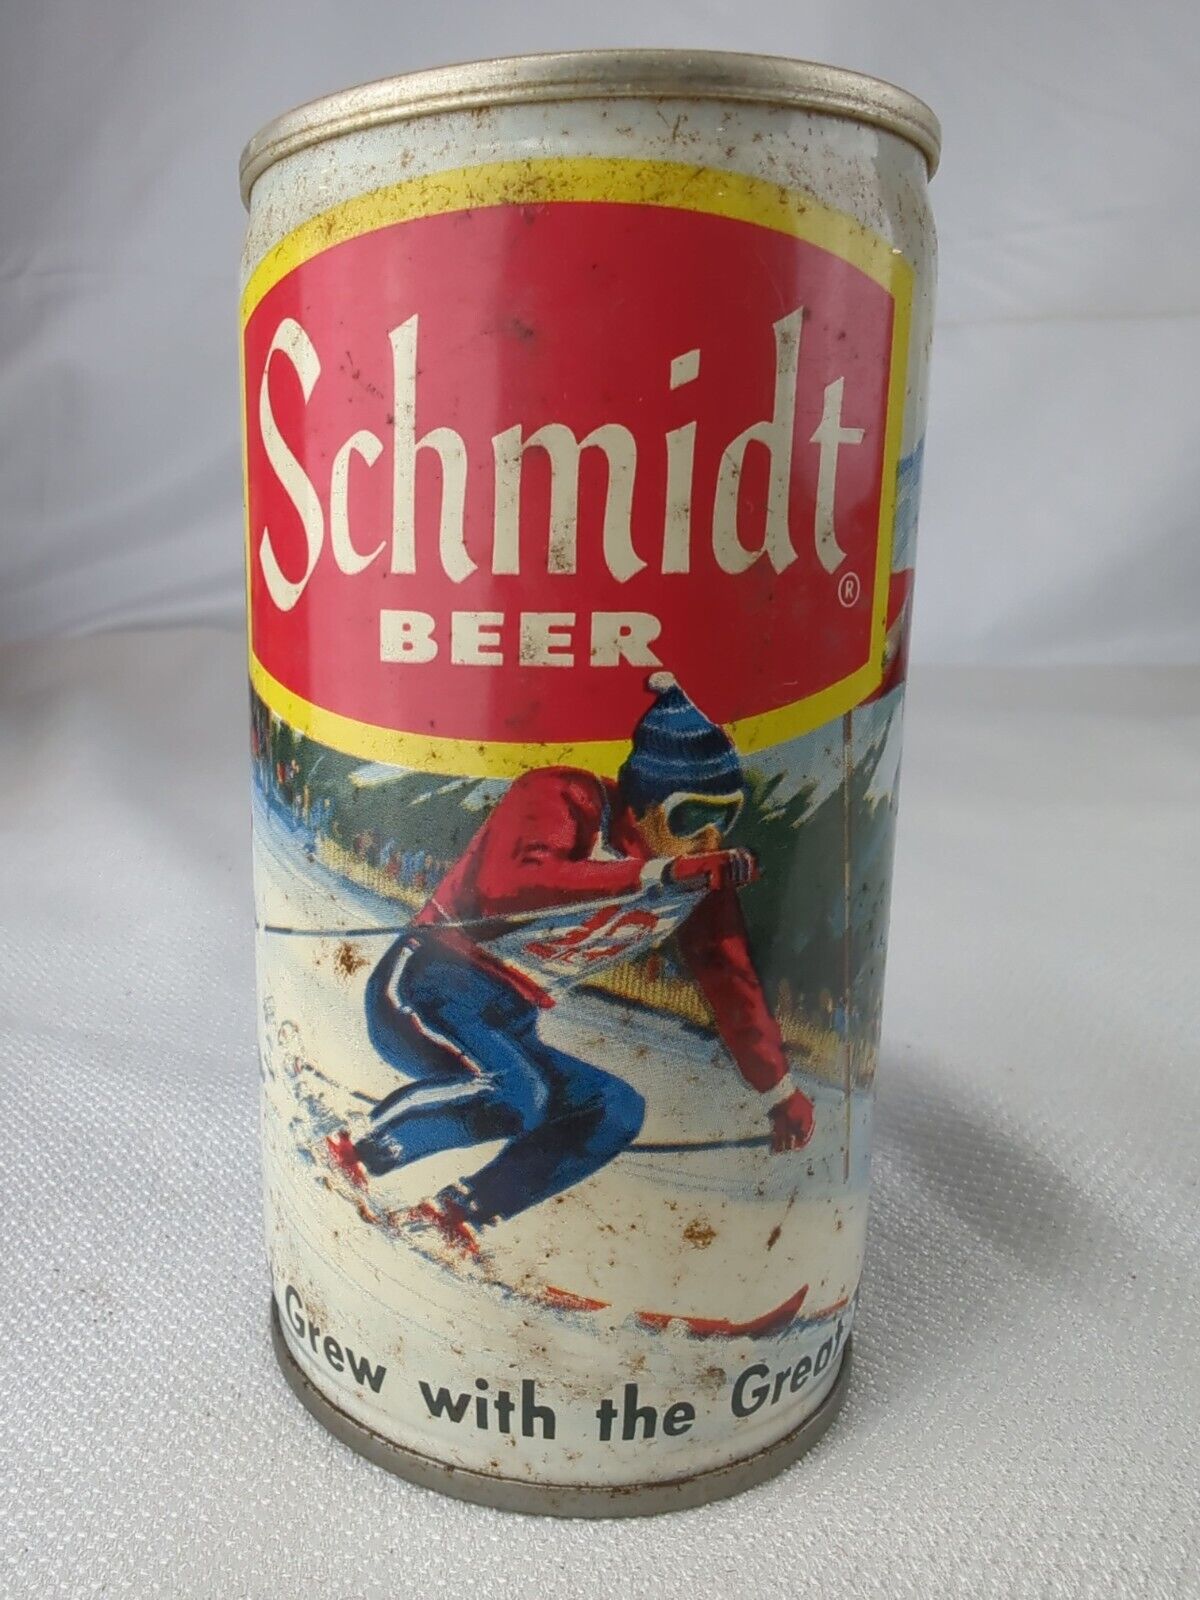 Schmidt Beer Ski Skiing Scene LaCrosse WI Pull Tab Beer Can EMPTY